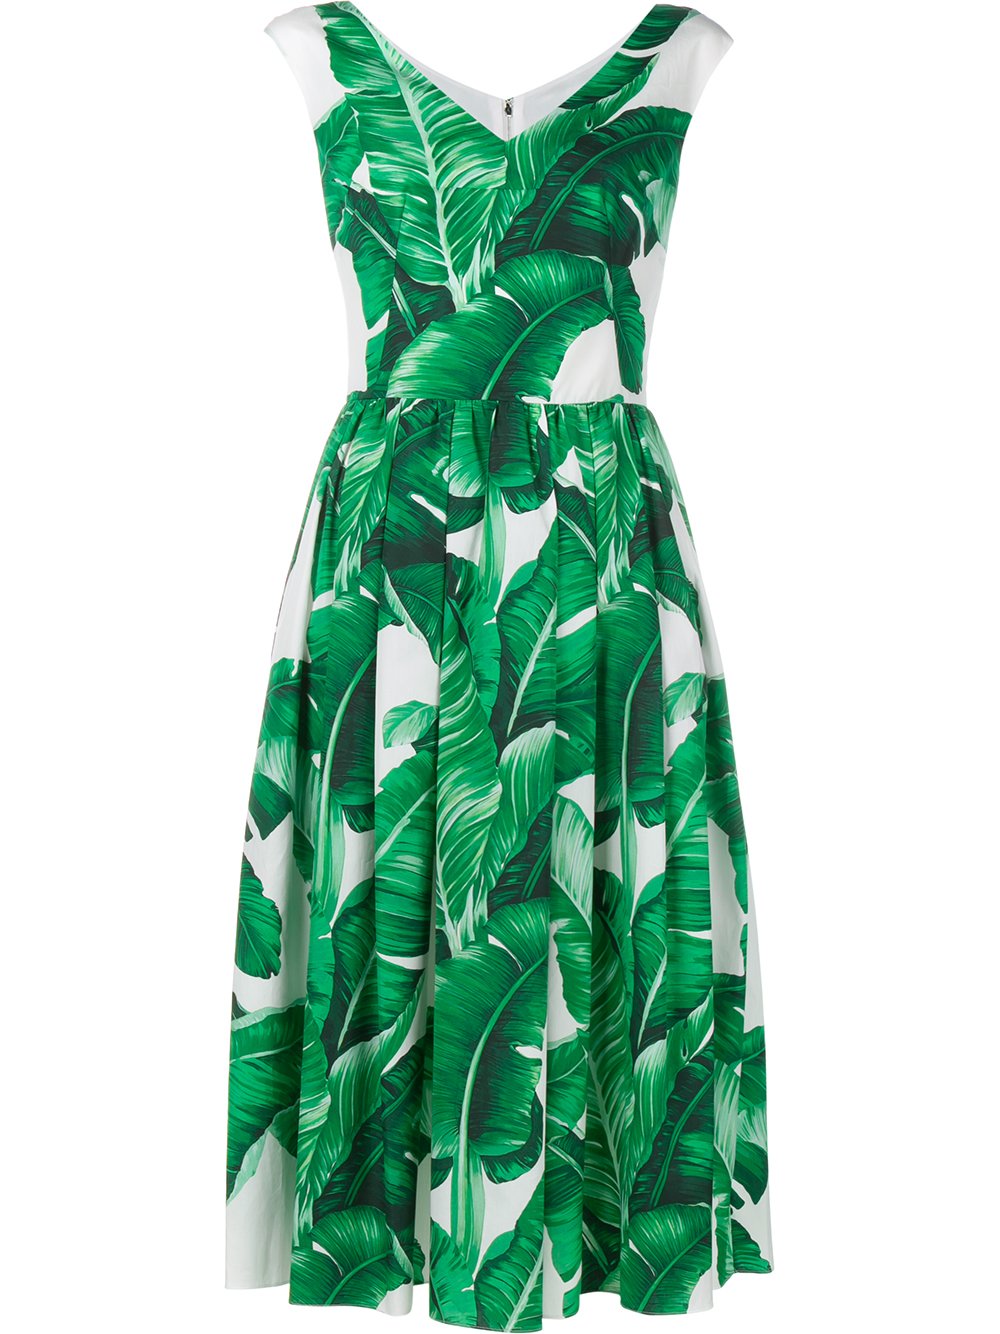 Dolce зеленые. Зеленое платье Дольче Габбана. Платье Дольче Габбана с банановыми листьями. Платье дольчегаббан зеленое. Платье Дольче Габбана зеленые листья.